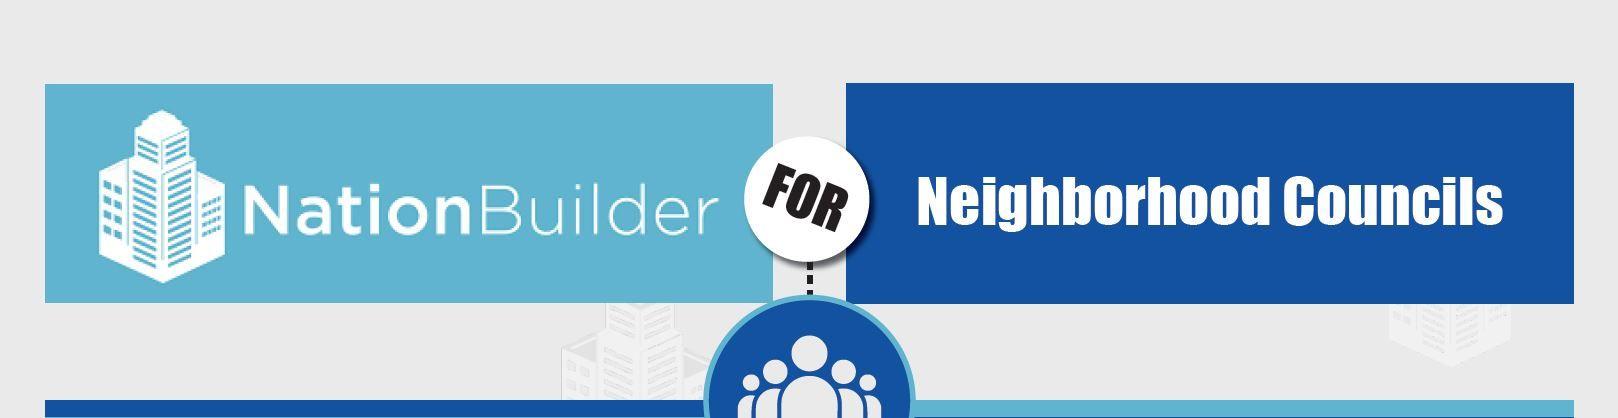 NationBuilder Logo - NationBuilder for Neighborhood Councils – Empower LA